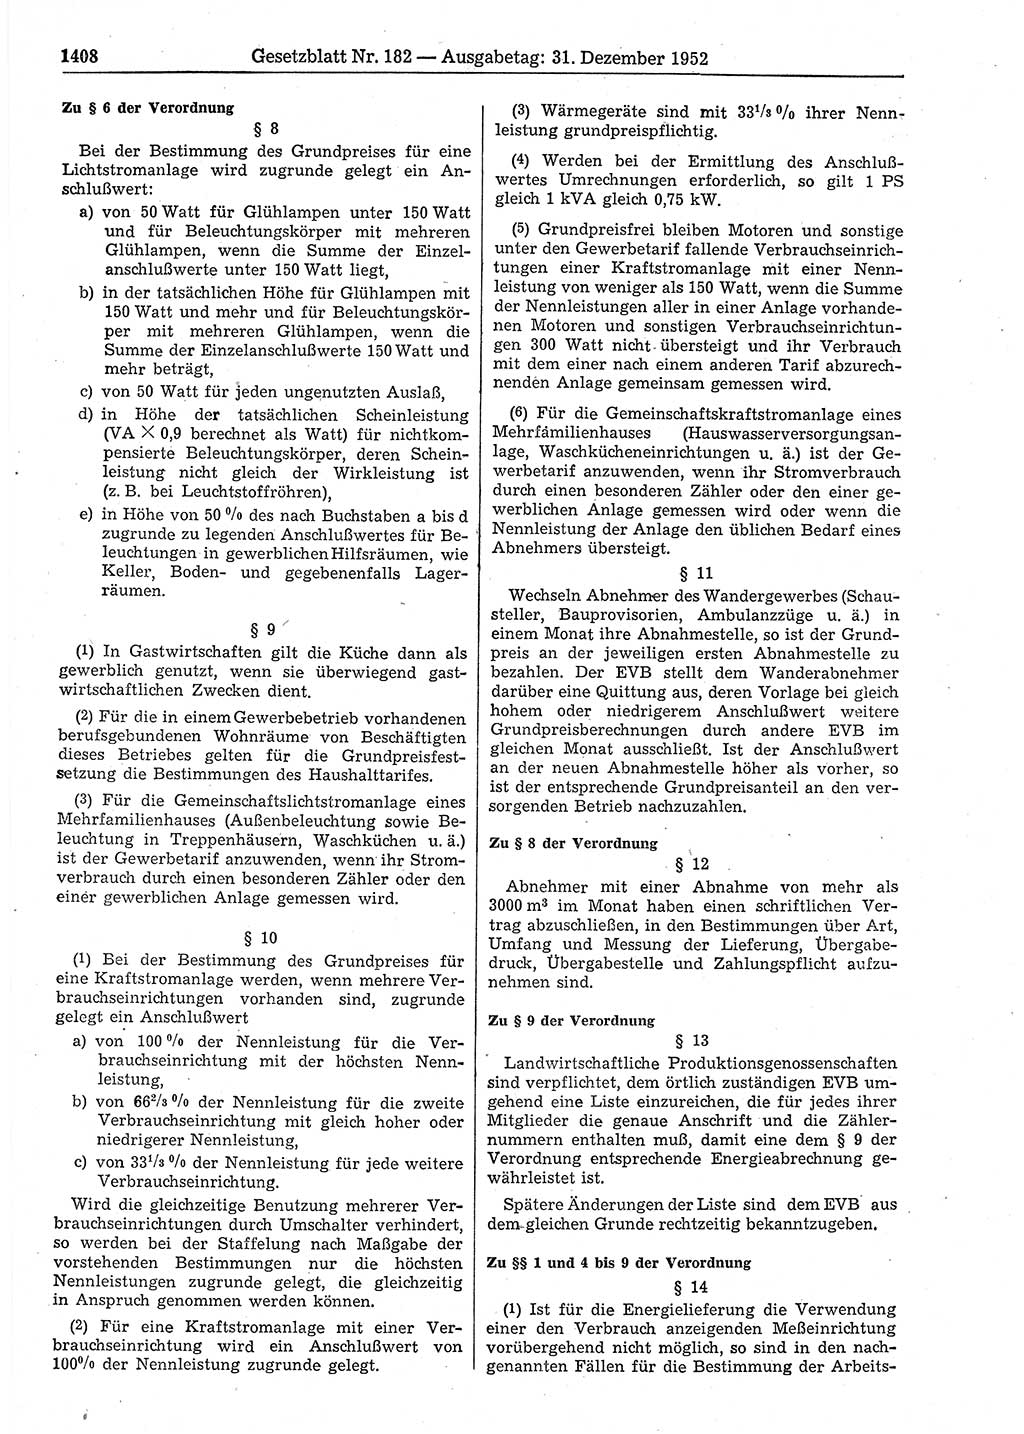 Gesetzblatt (GBl.) der Deutschen Demokratischen Republik (DDR) 1952, Seite 1408 (GBl. DDR 1952, S. 1408)